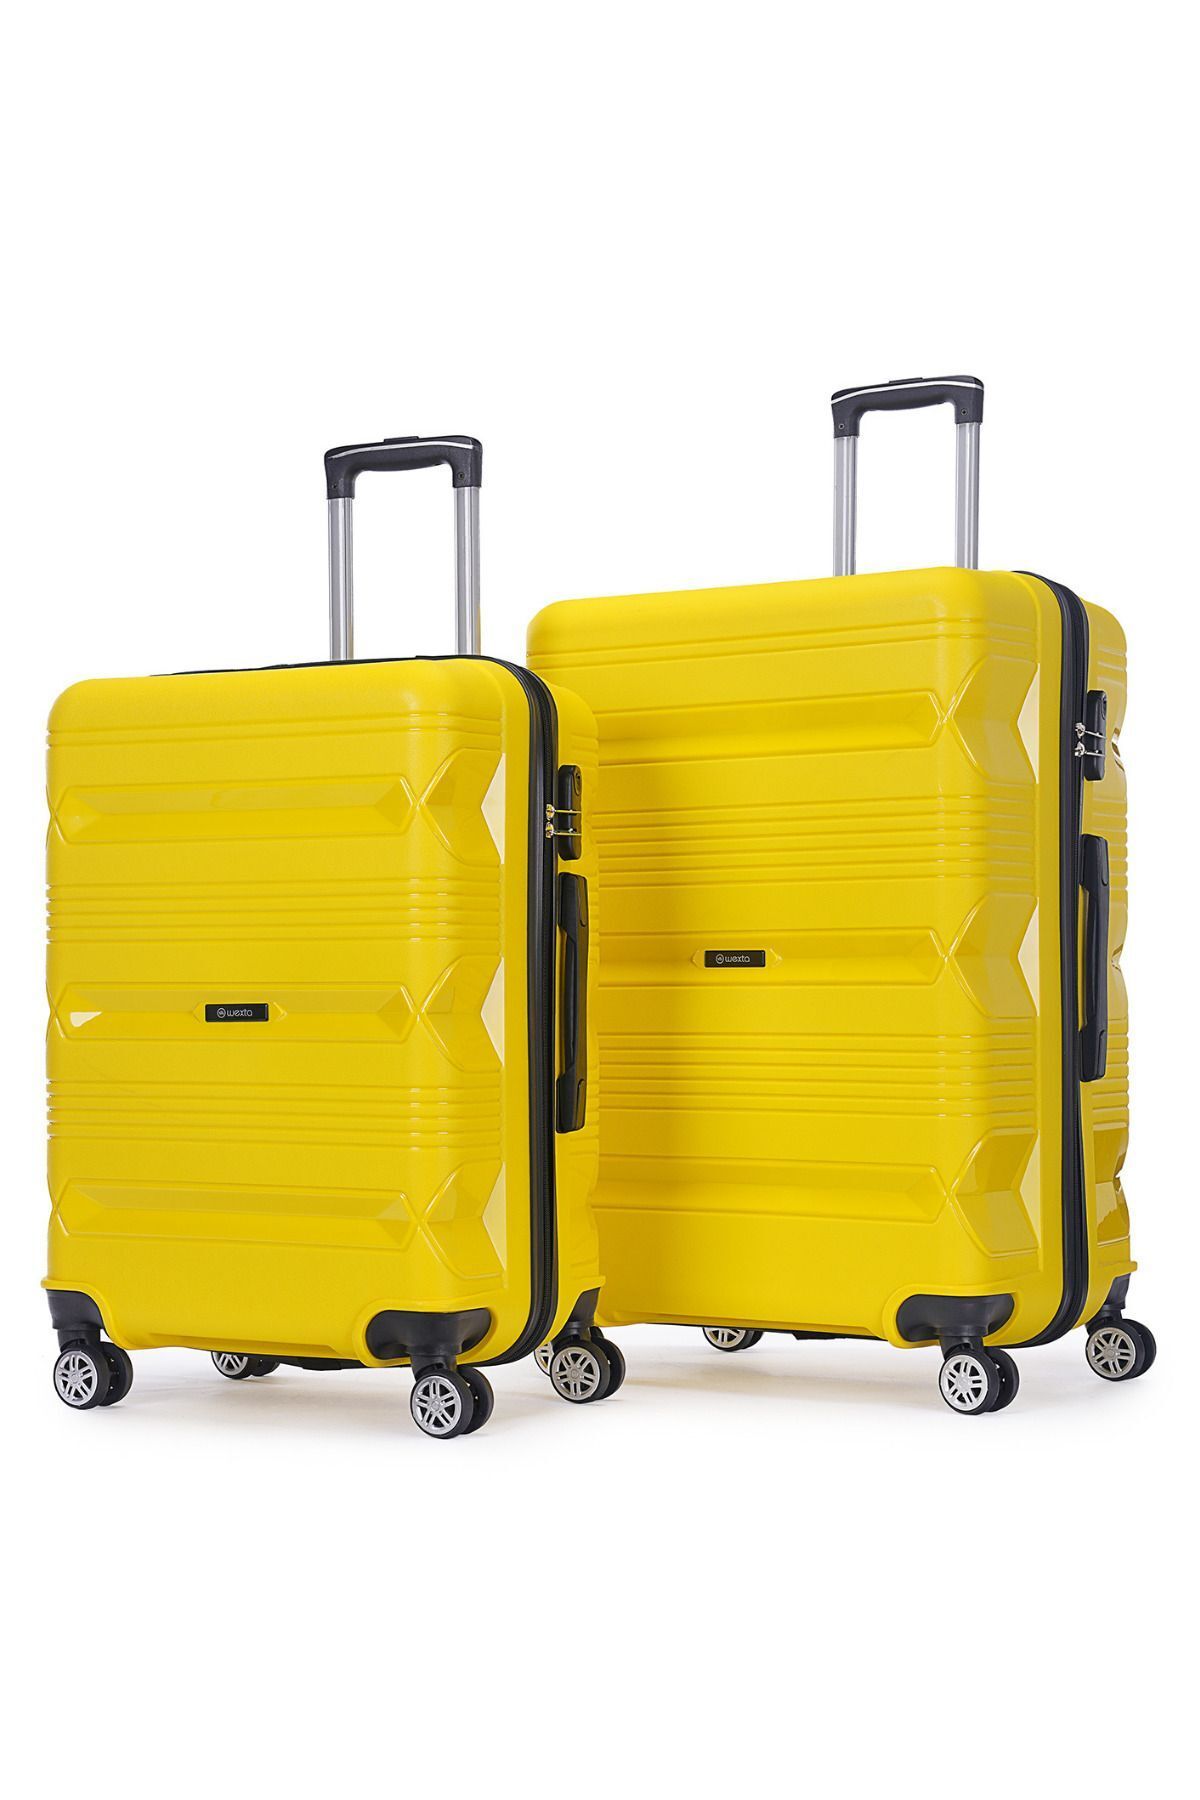 Wexta WX-PP14 Büyük & Orta 2'li Set Polipropilen Kırılmaz Pp Valiz / Seyahat Bavulu